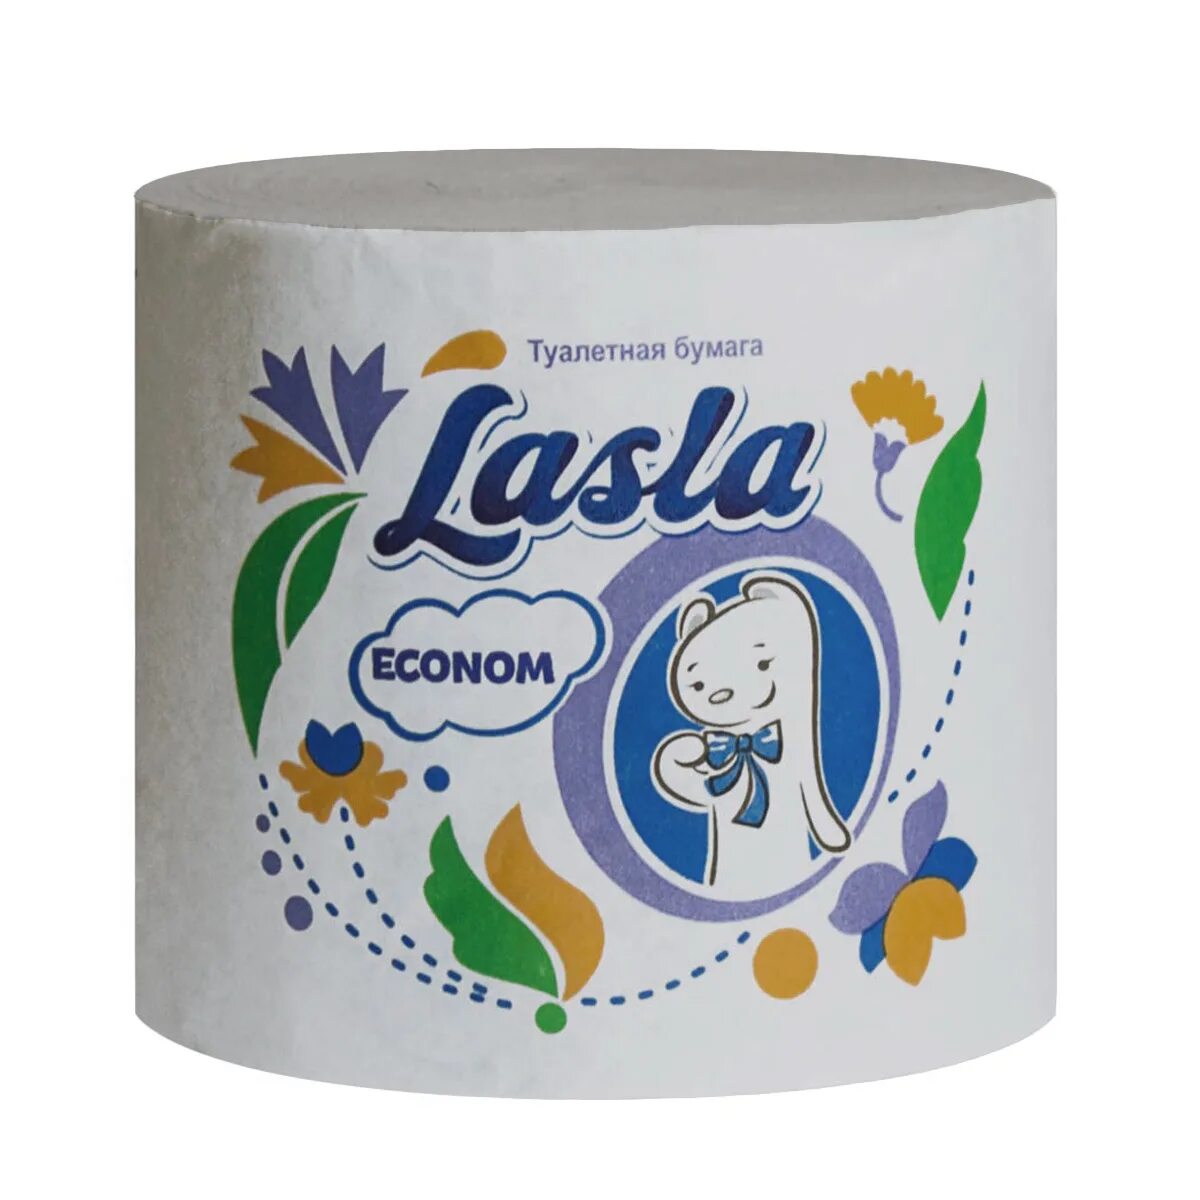 Этикетки туалетной. Туалетная бумага Lasla. Туалетная бумага Lasla Econom без втулки м-45. Туалетная бумага Lasla Econom м-45 33 м. Туалетная бумага Ласла эконом.